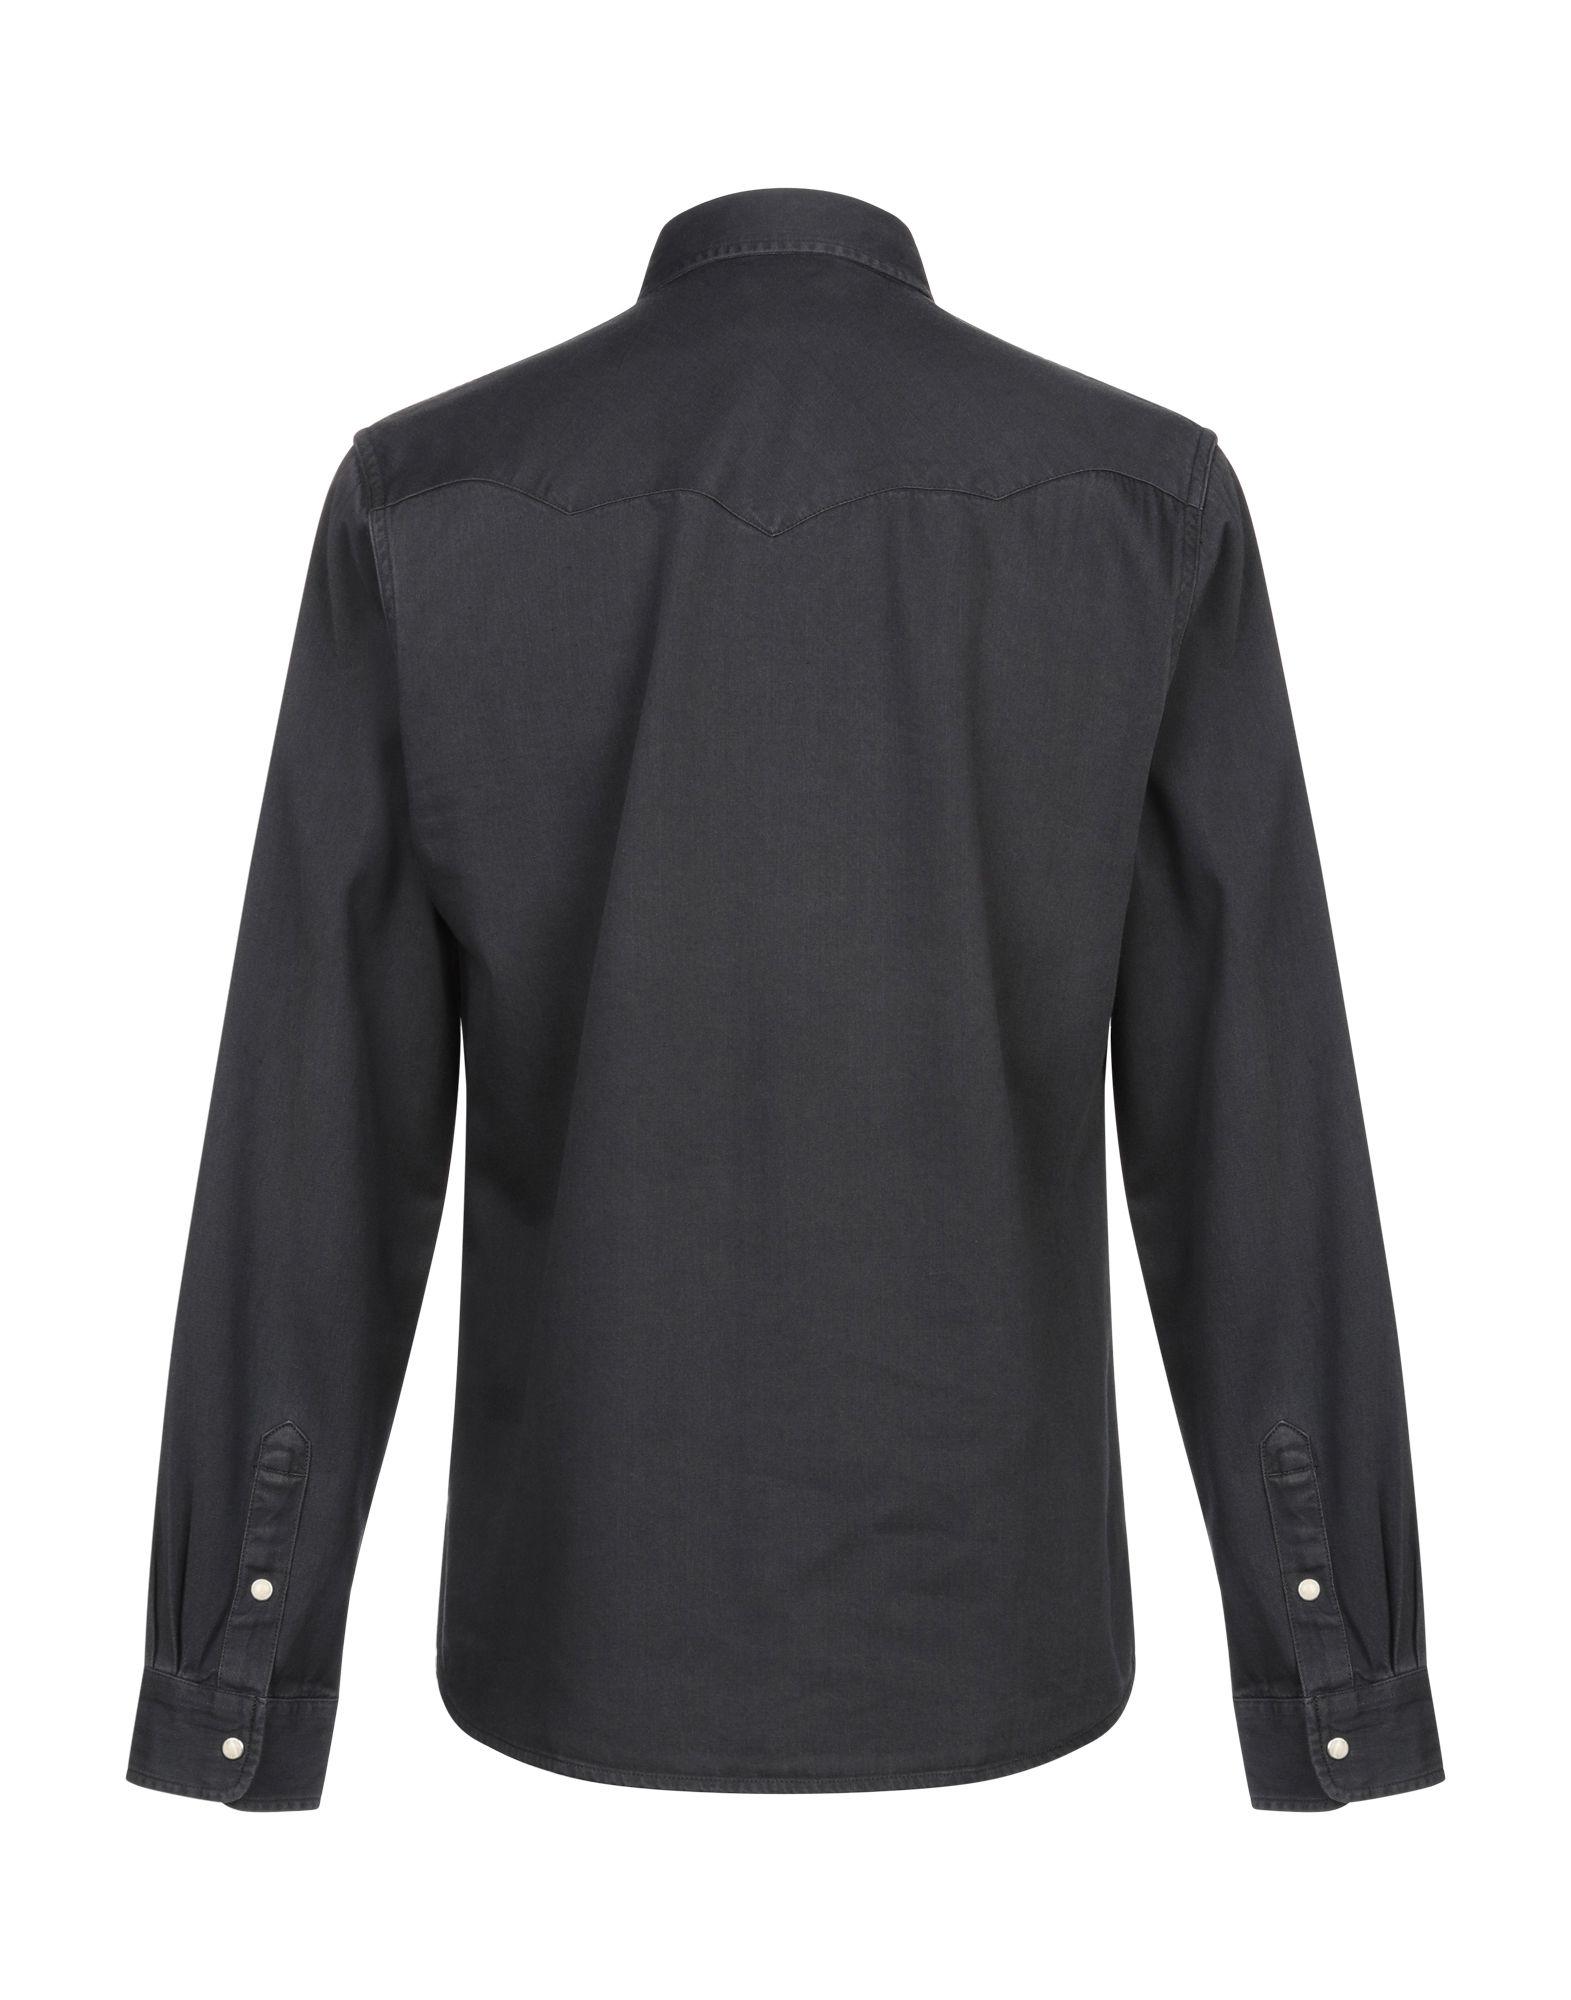 Wrangler Denim Shirt in Black for Men - Lyst